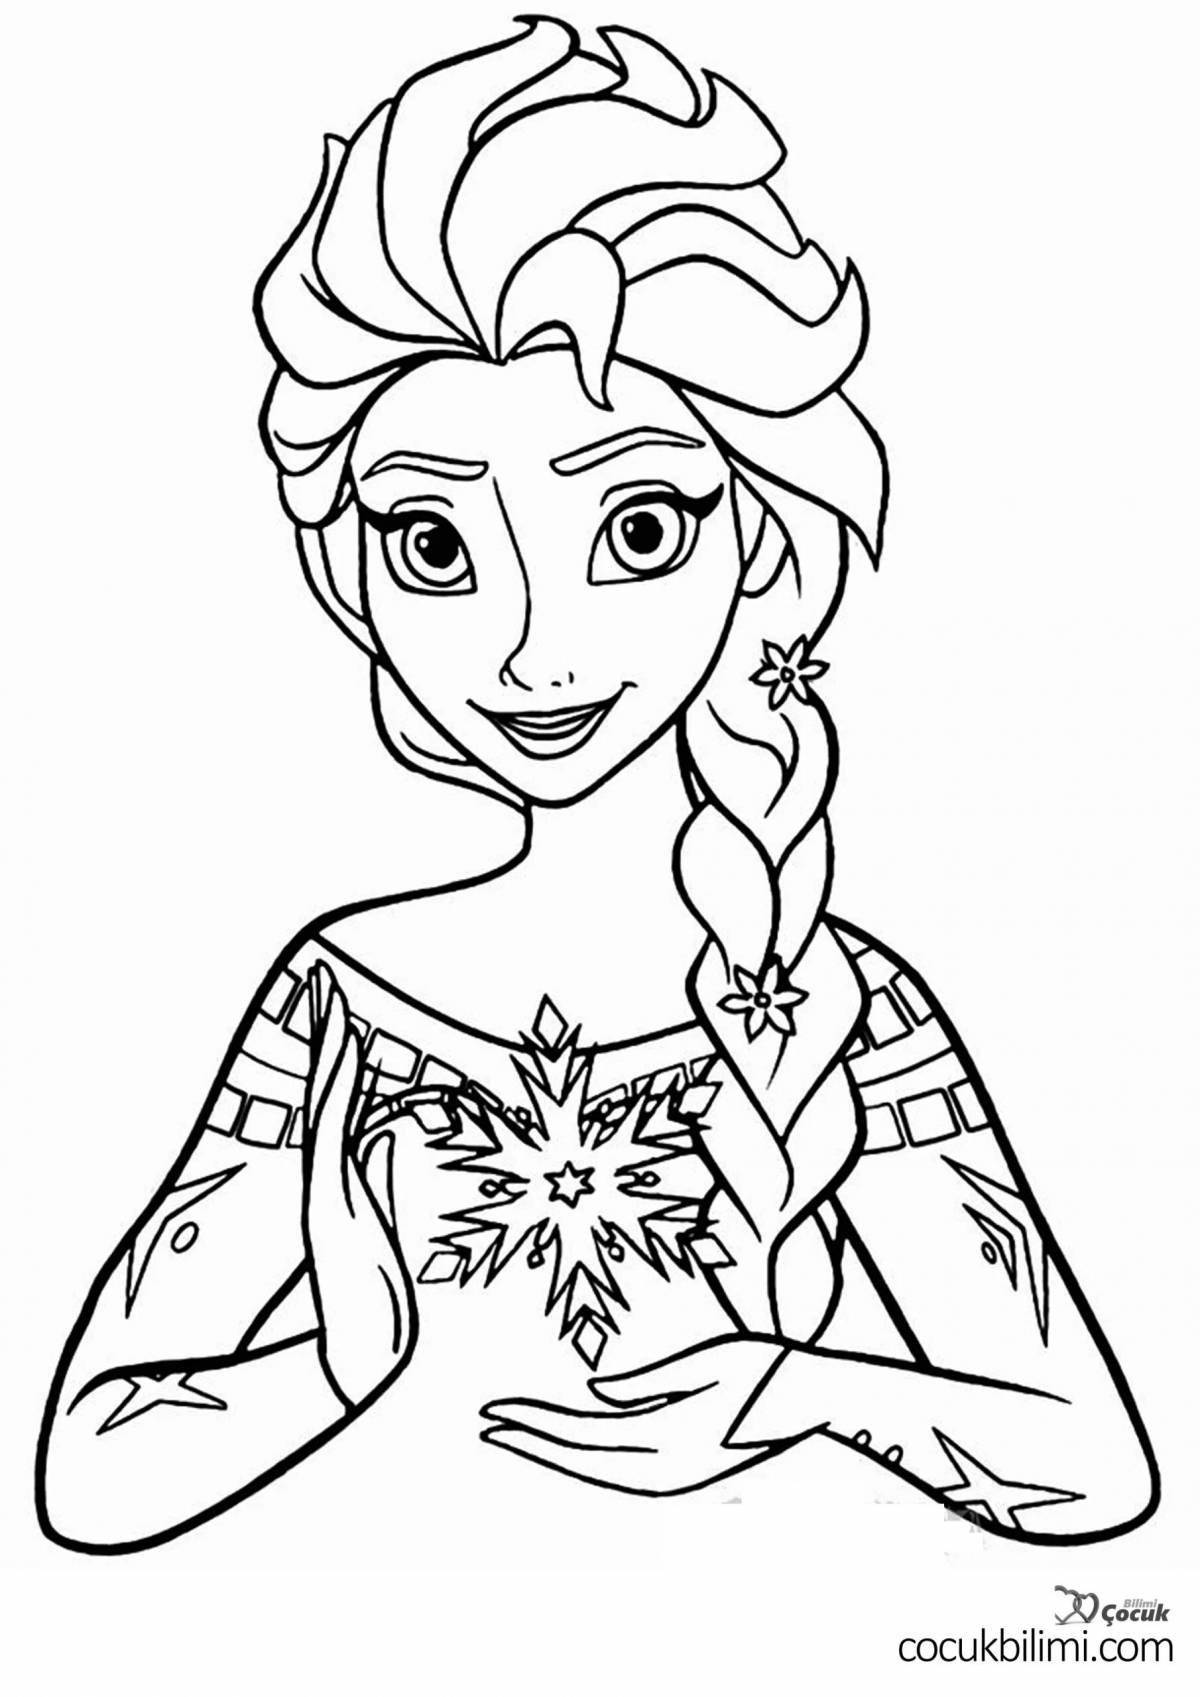 Princess Elsa coloring book for kids